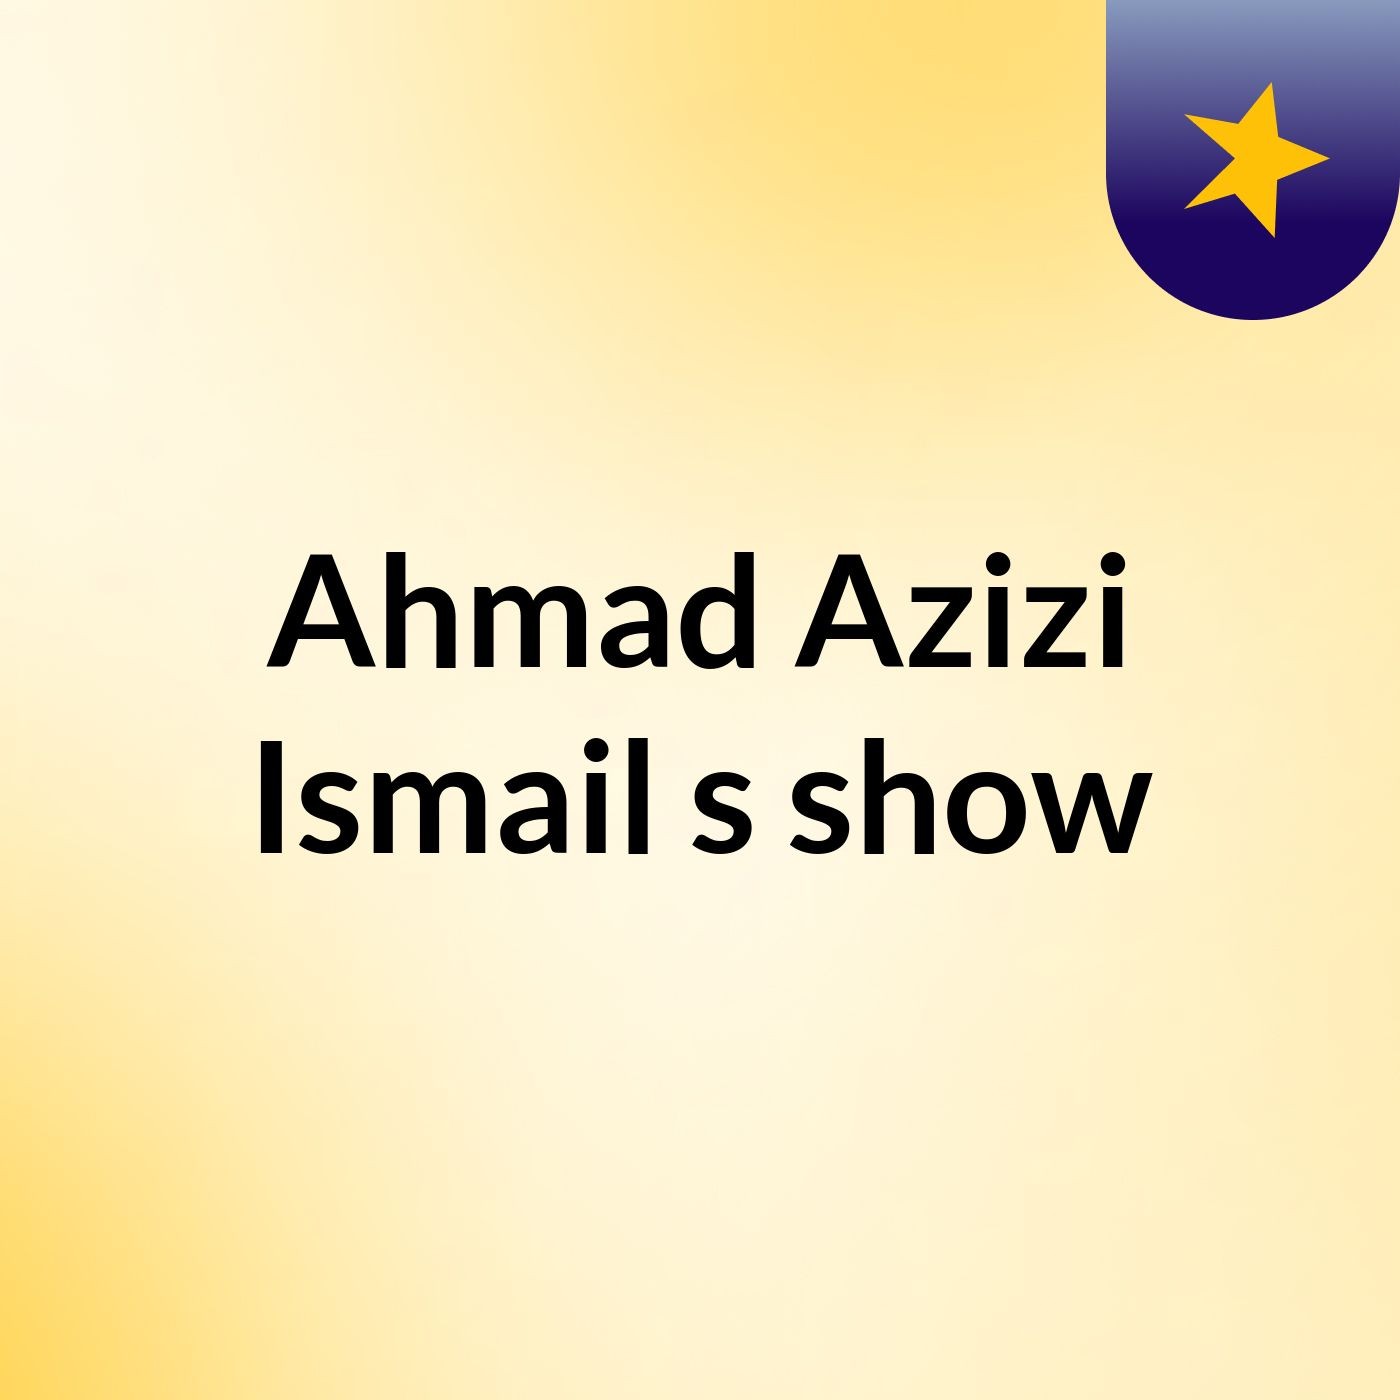 Ahmad Azizi Ismail's show